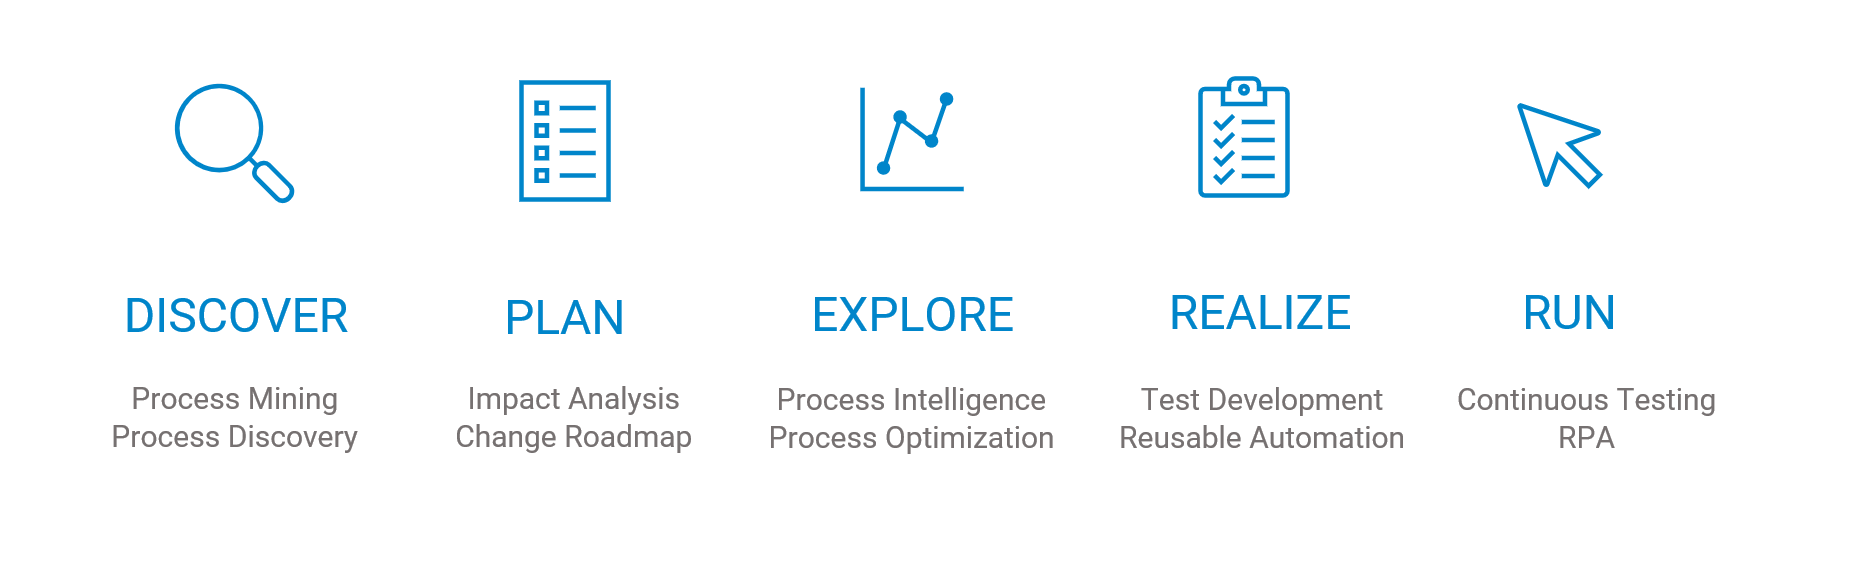 process mining process discovery impact analysis process optimization 